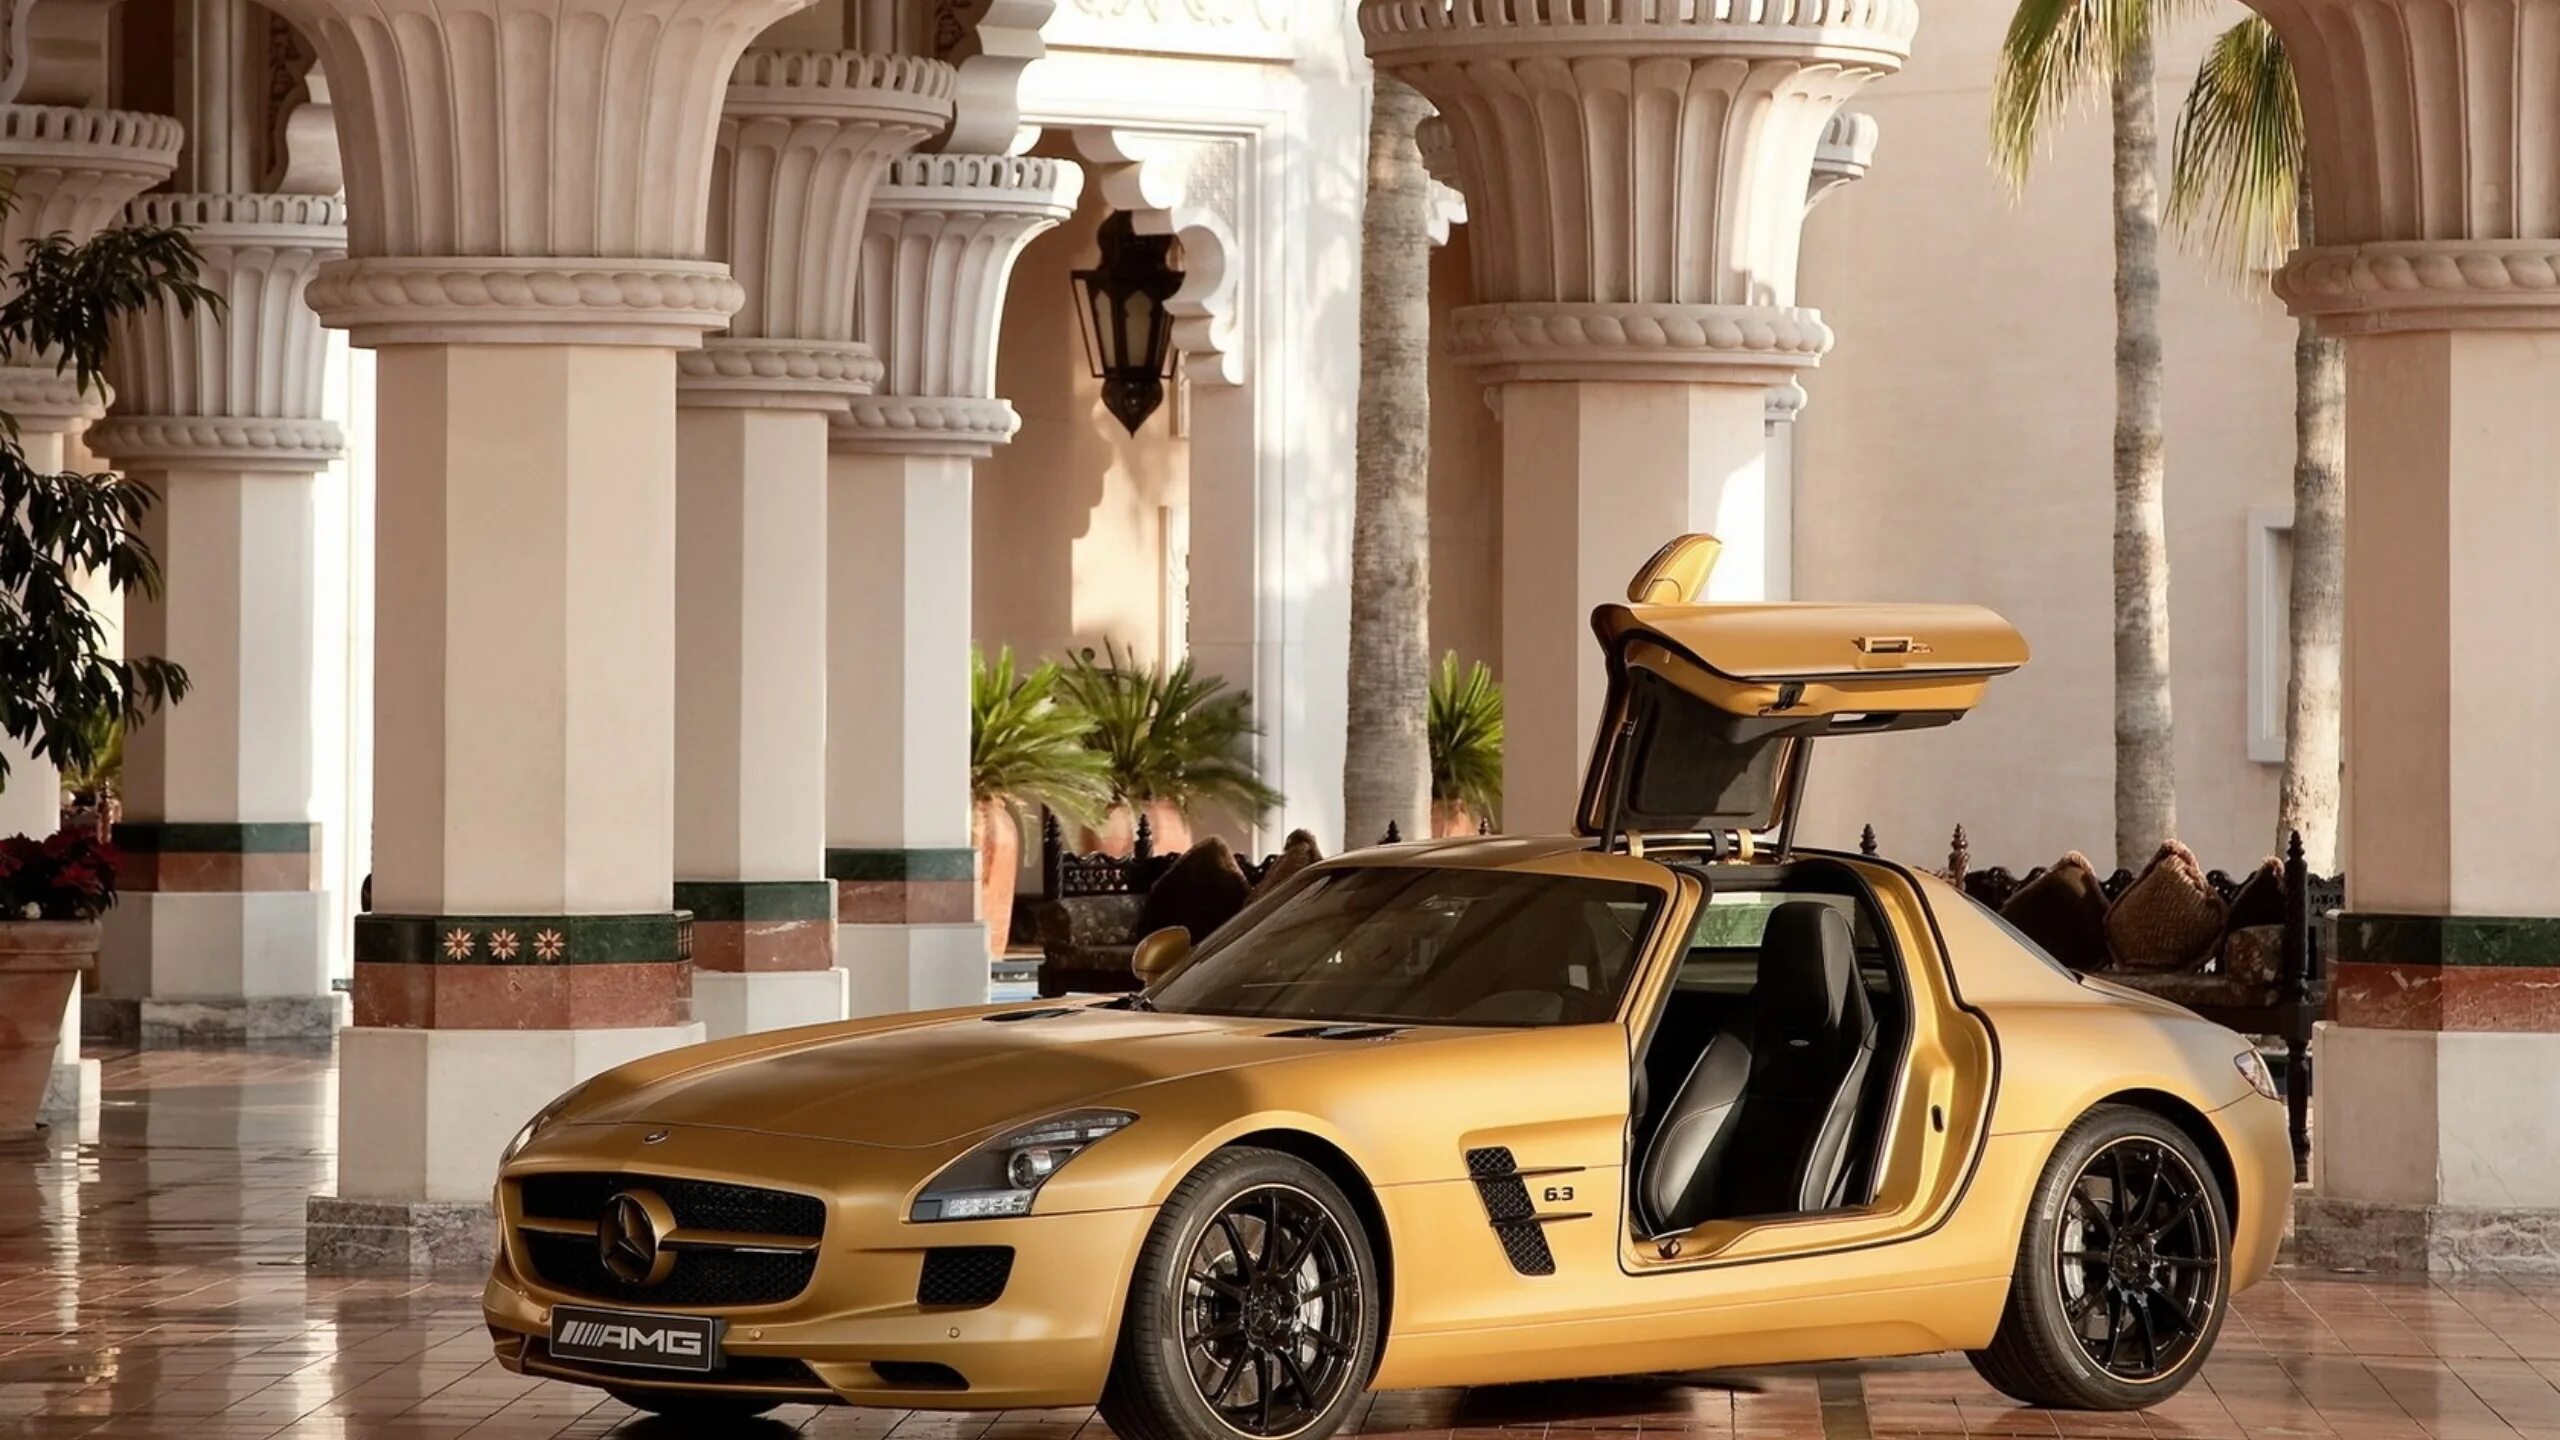 Открытый мир с автомобилями. Мерседес СЛС АМГ золотой. Мерседес Бенц СЛС АМГ В Дубае. 2010 Mercedes Benz SLS AMG Desert. Mercedes AMG SLS Desert Gold.